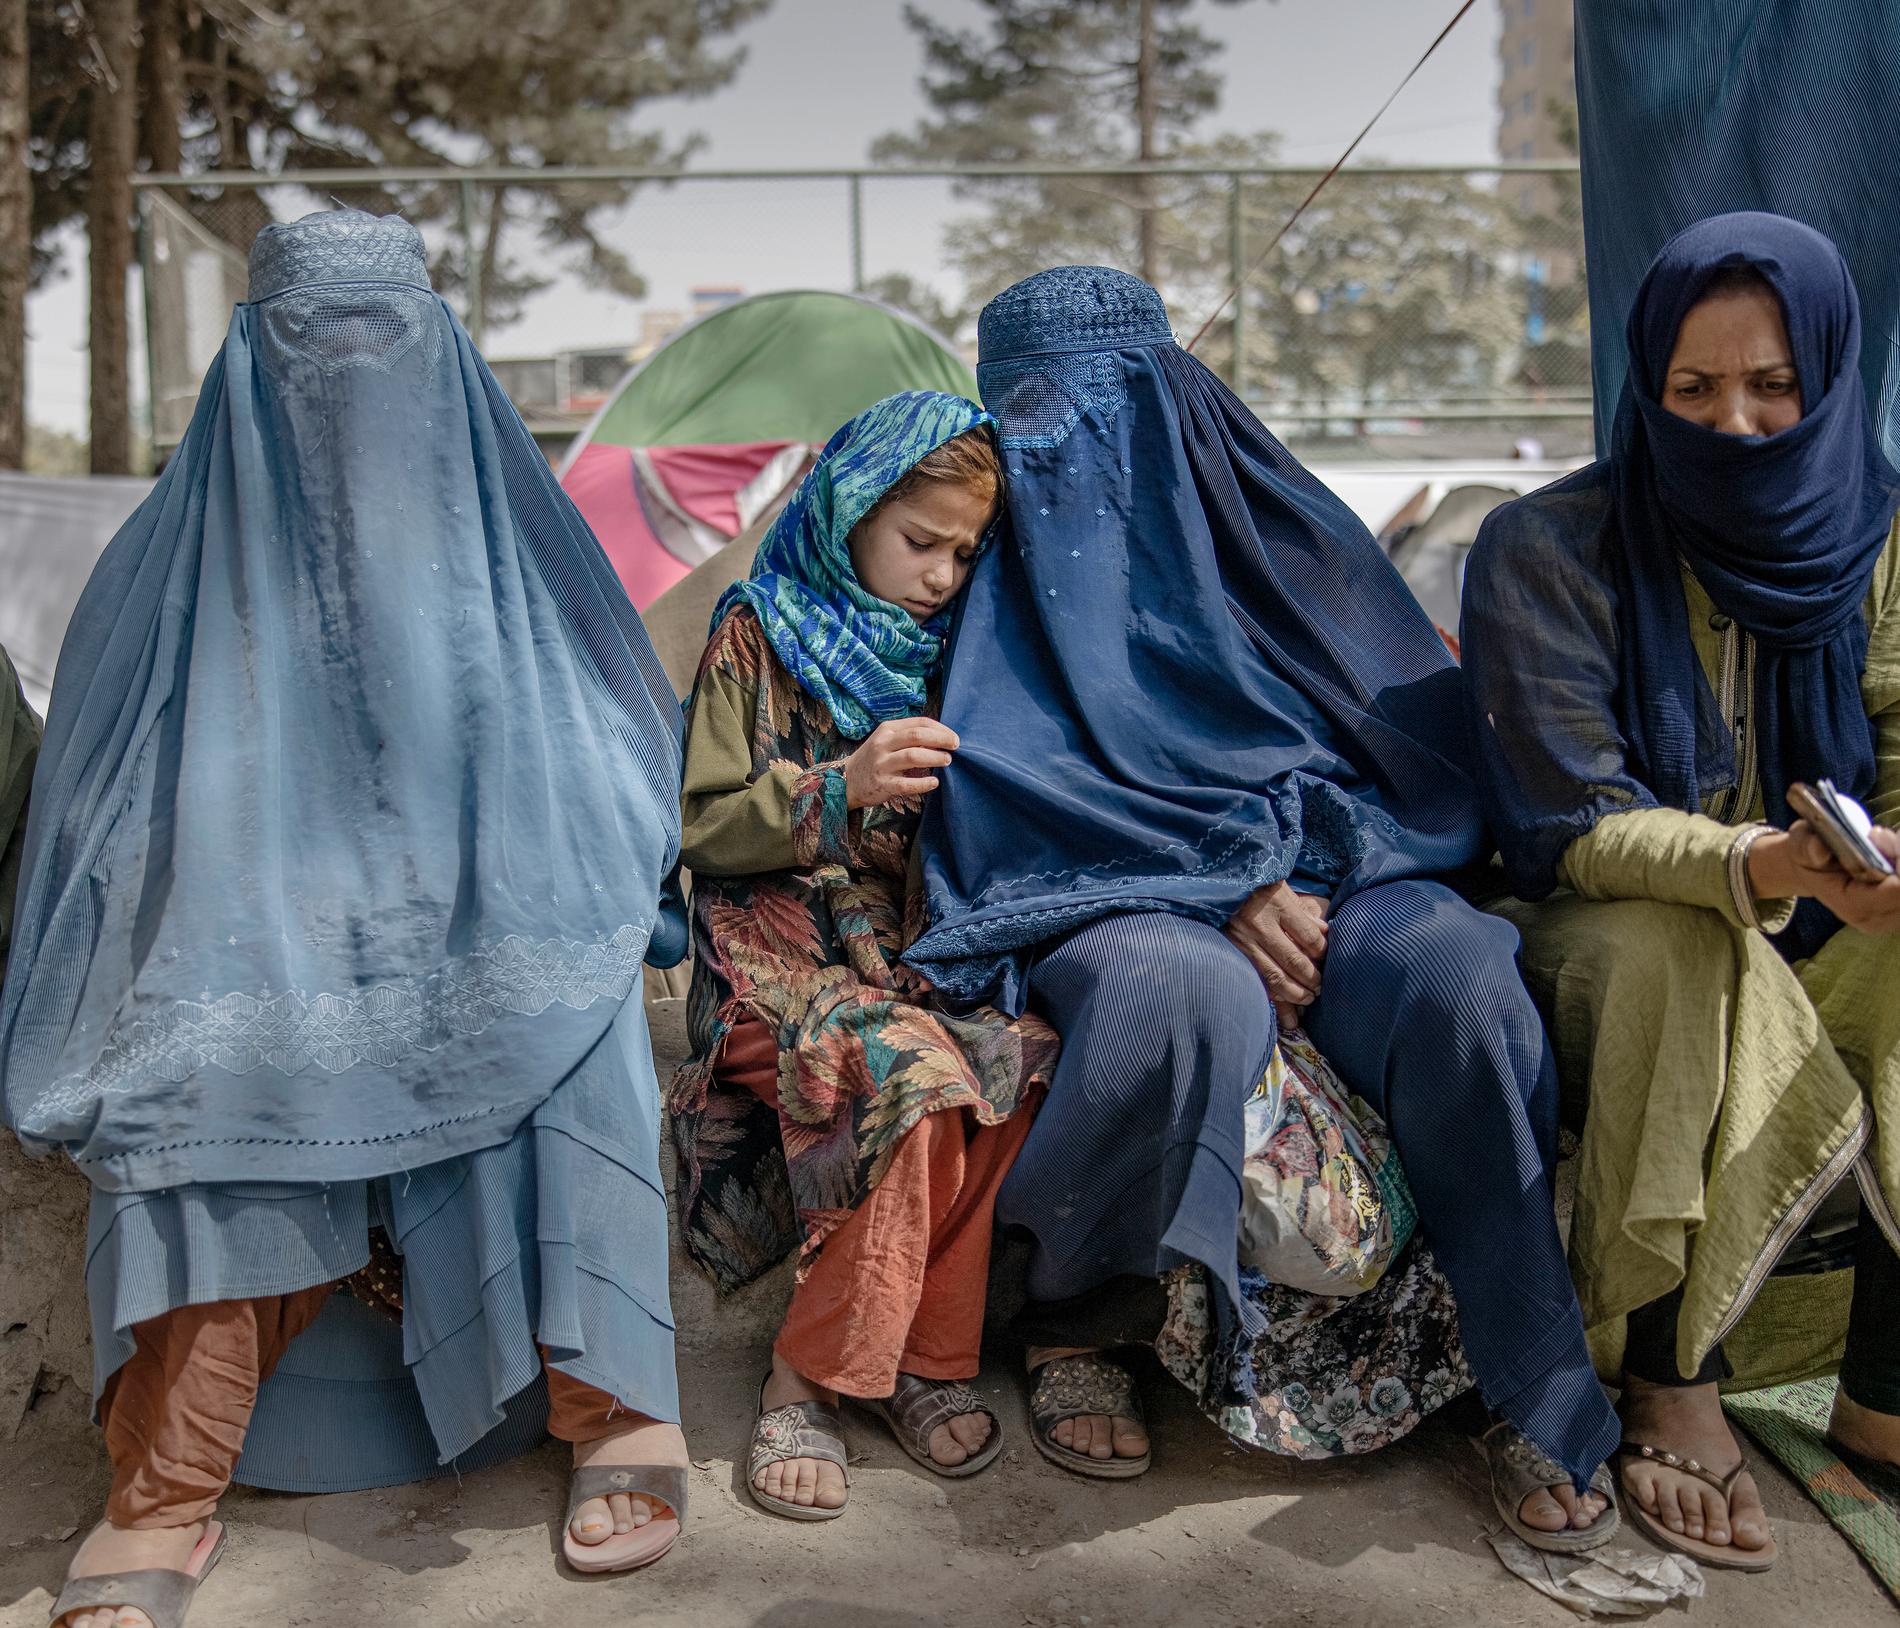 I Kabul samlas många internflyktingar från andra delar av landet och lever nu på gatan under svåra förhållanden.